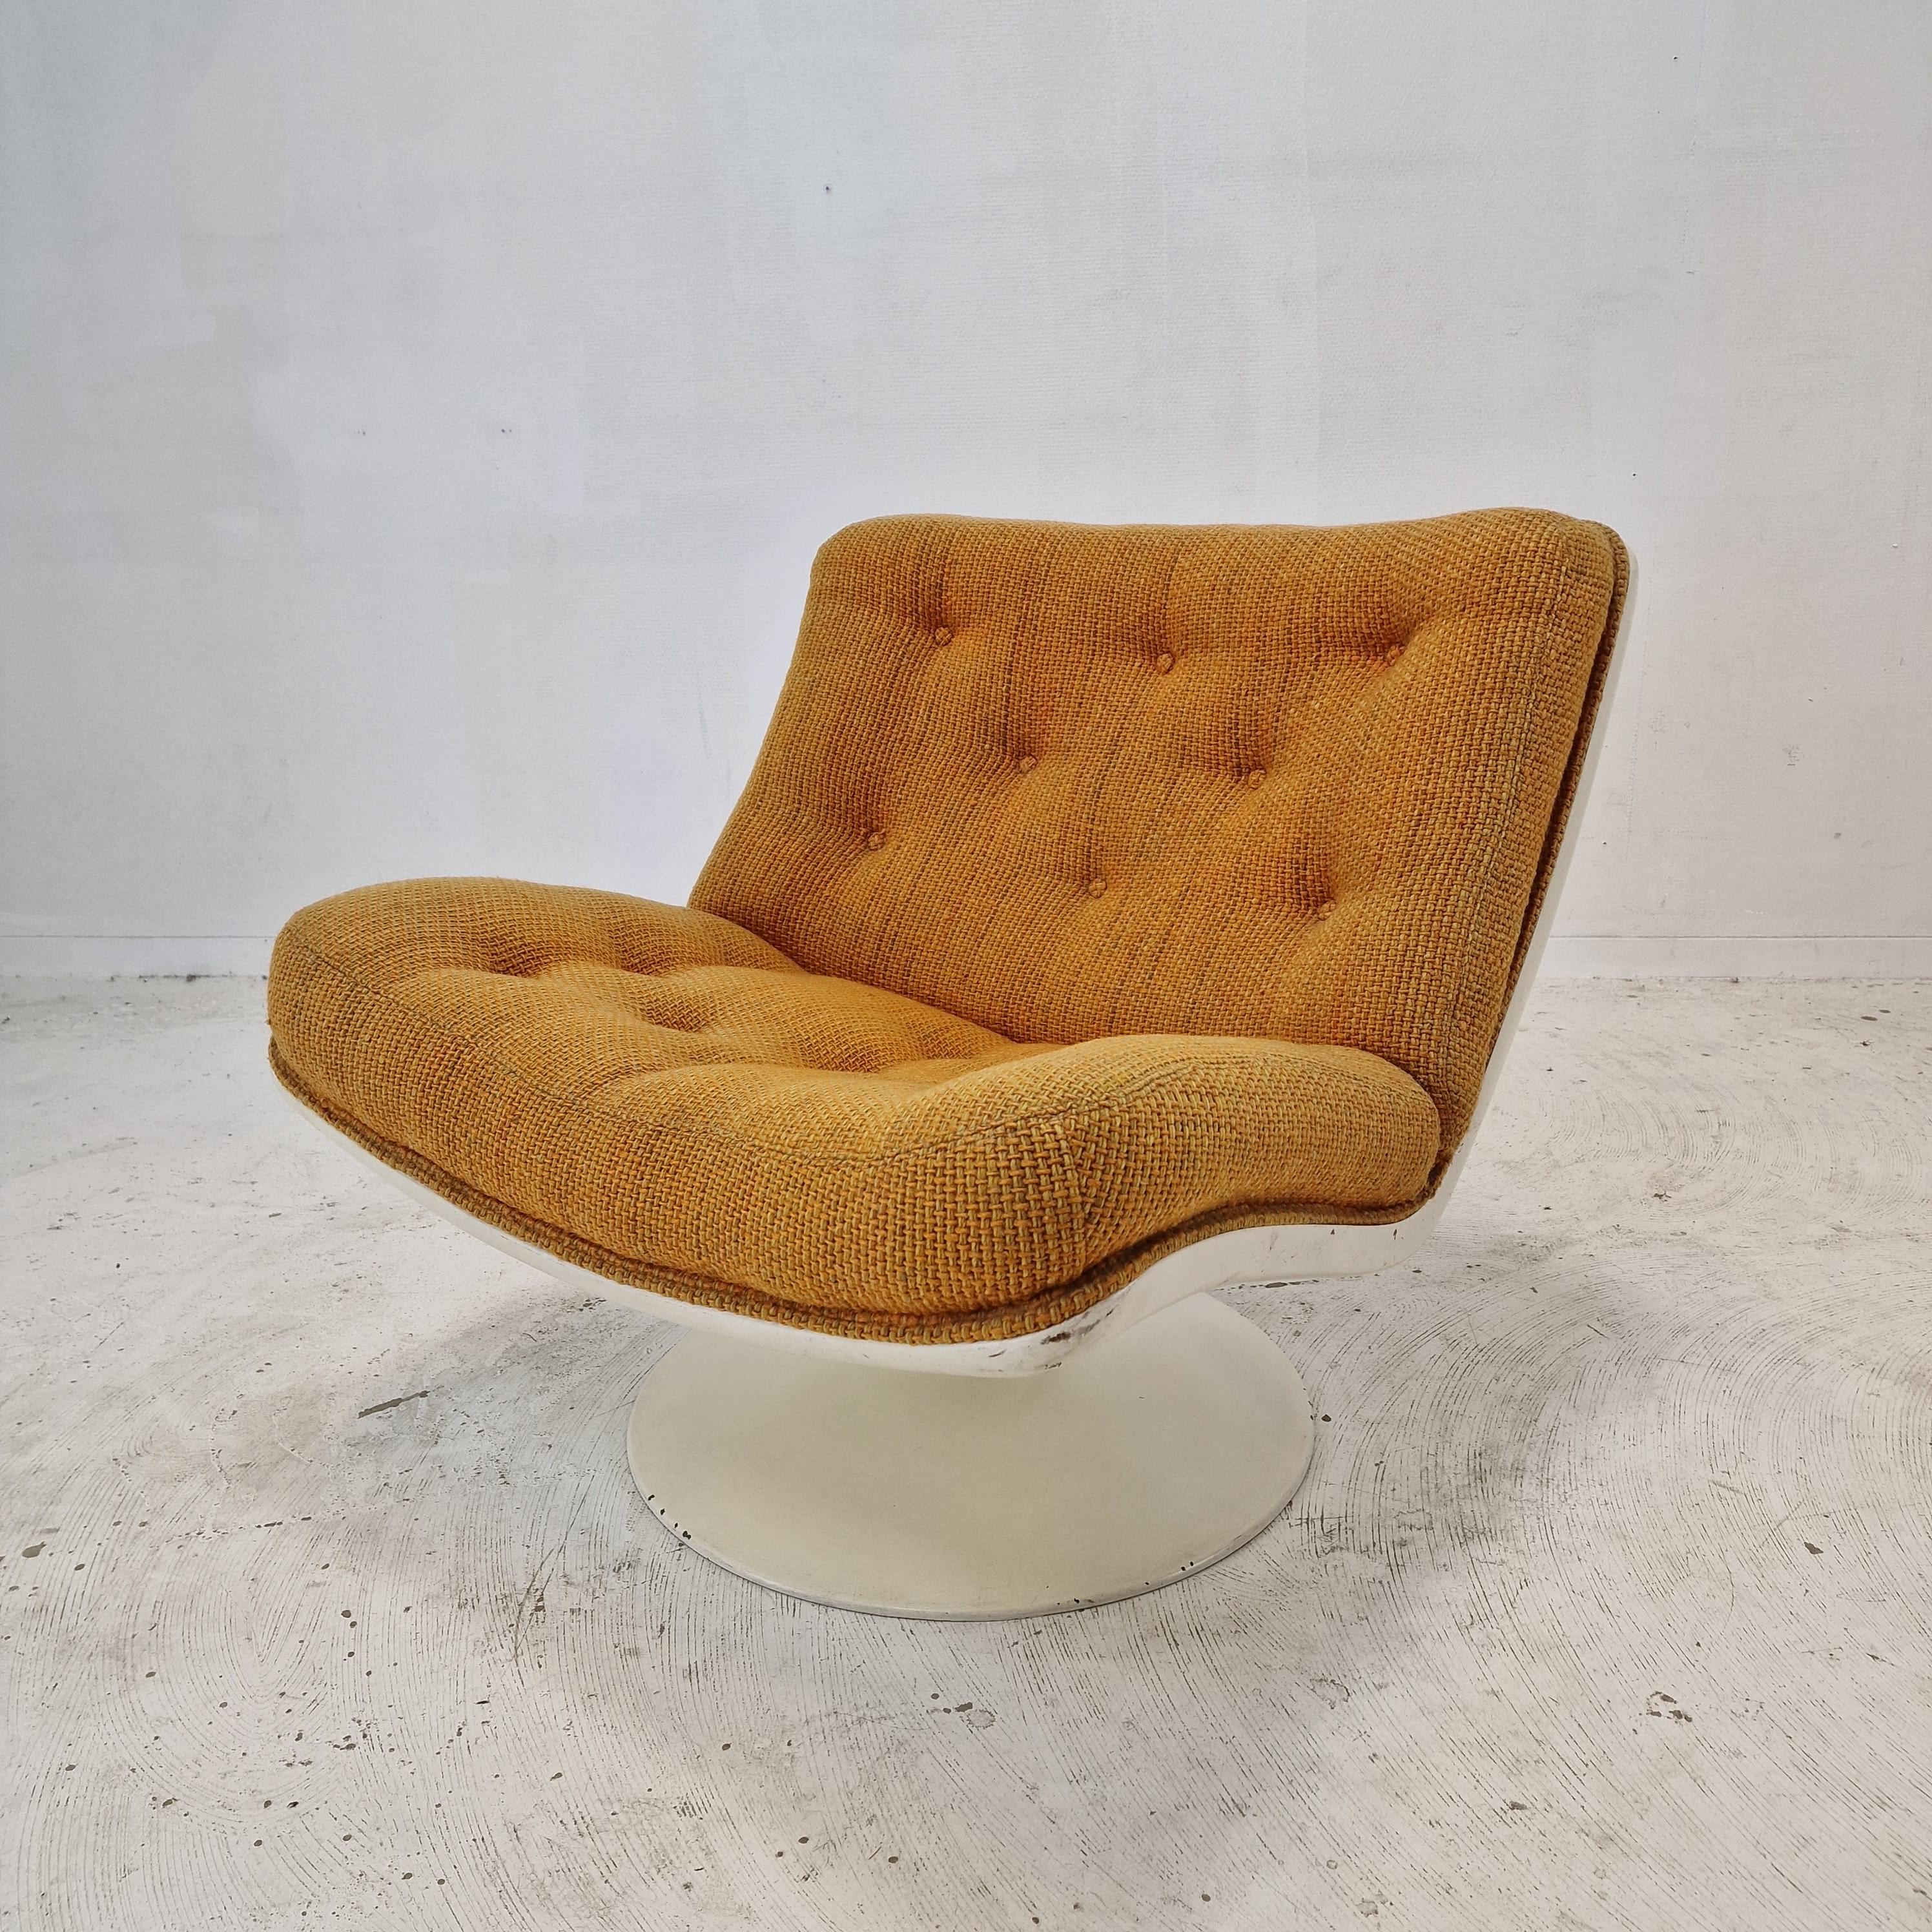 Sehr hübscher und bequemer 975 Lounge Chair, entworfen von dem berühmten Geoffrey Harcourt für Artifort in den 70er Jahren.

Stabiler Rahmen mit schwenkbarem Fuß.  
Der Stuhl hat die ursprüngliche hohe Qualität Wolle Stoff, Farbe orange. 
Es hat die